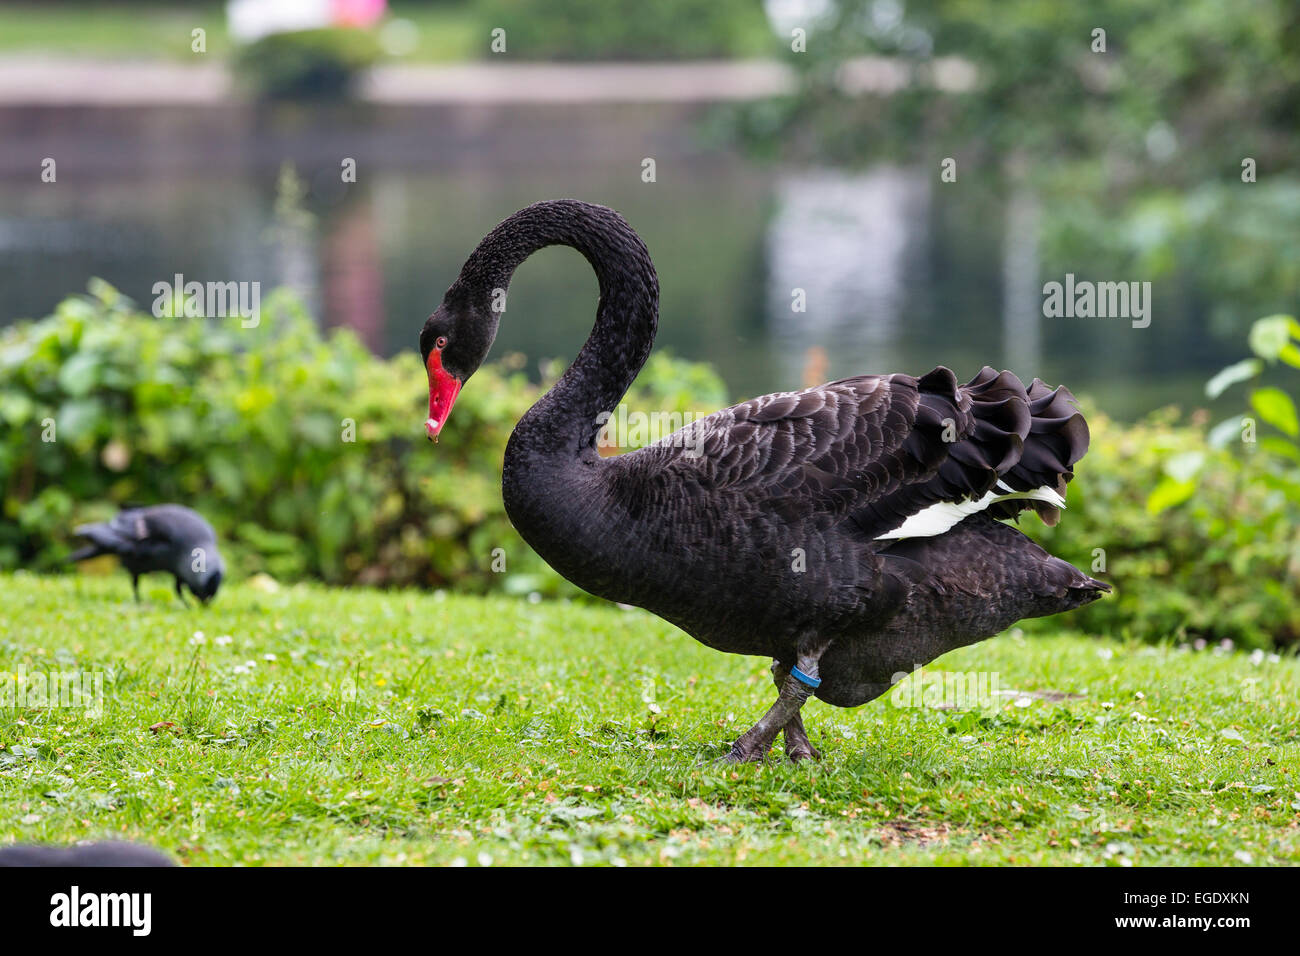 Black Swan en los jardines del spa, Cygnus atratus, Norderney Island, parque nacional, Mar del Norte, Islas de Frisia Oriental, Frisia Oriental, Baja Sajonia, Alemania, Europa Foto de stock